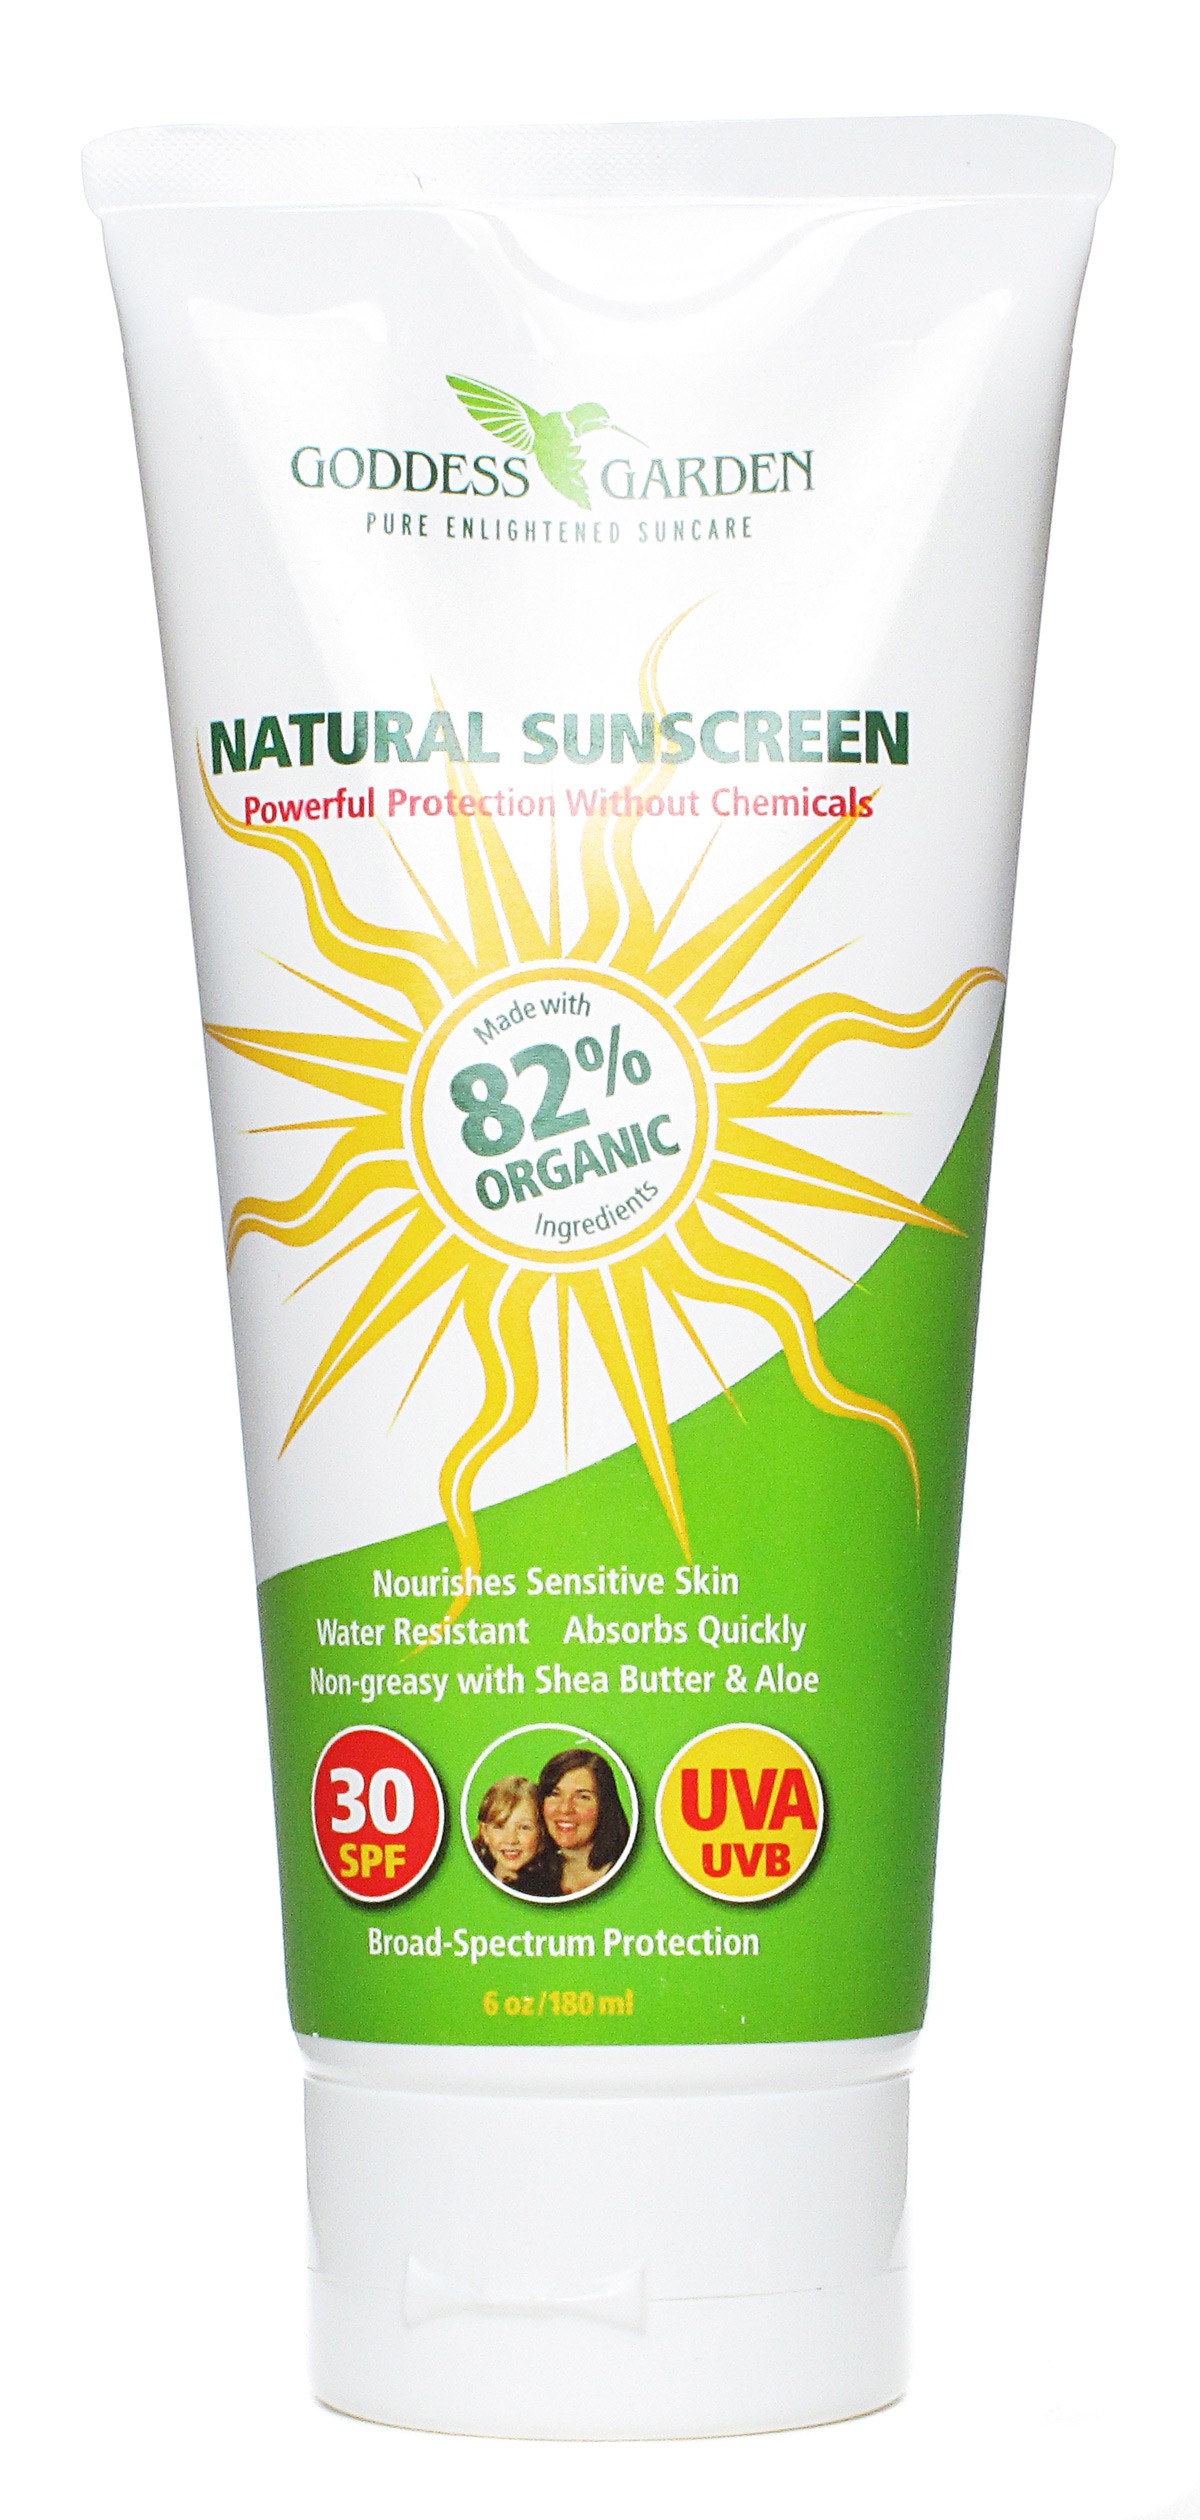 GODDESS GARDEN: Natural Sunscreen SPF30 Family Size 6 oz